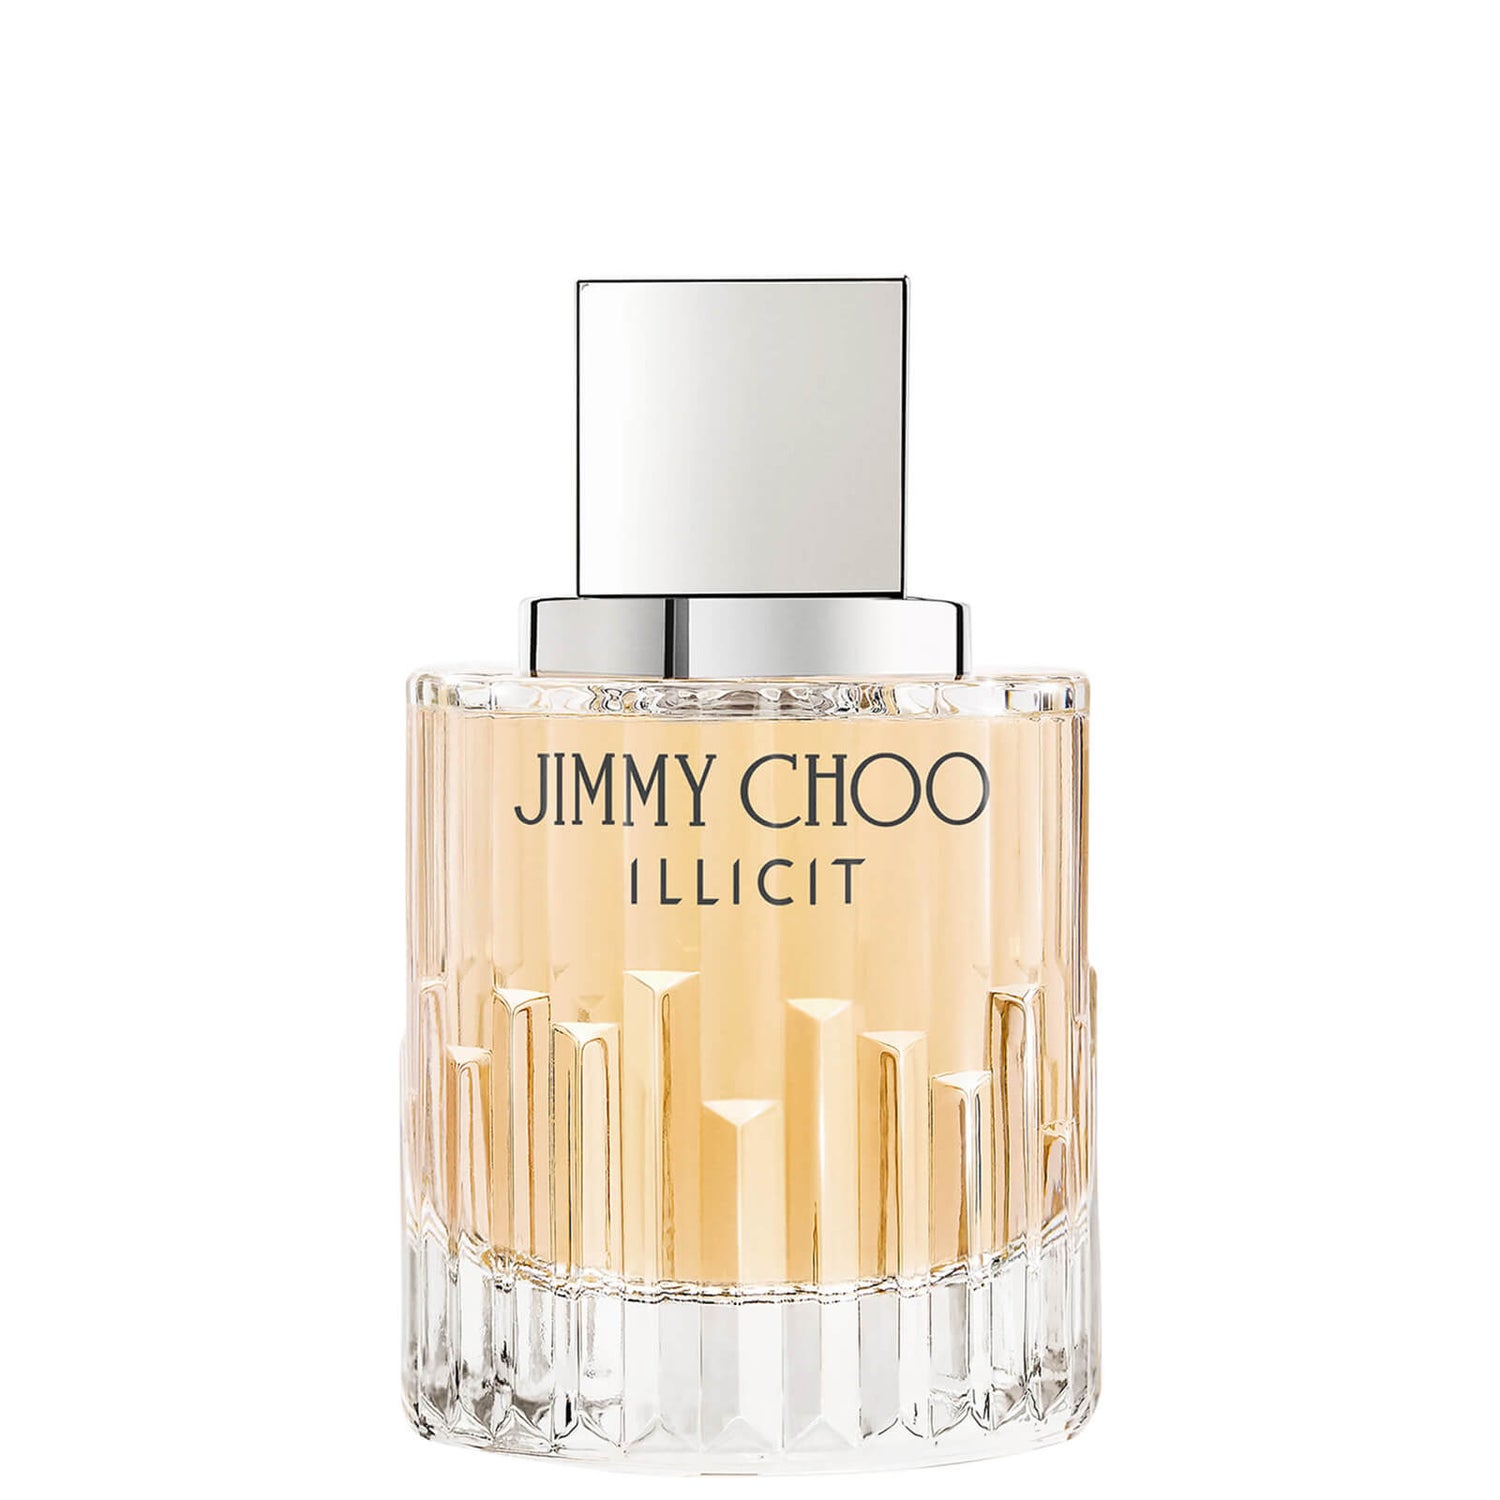 Jimmy Choo Illicit Eau de Parfum 60ml